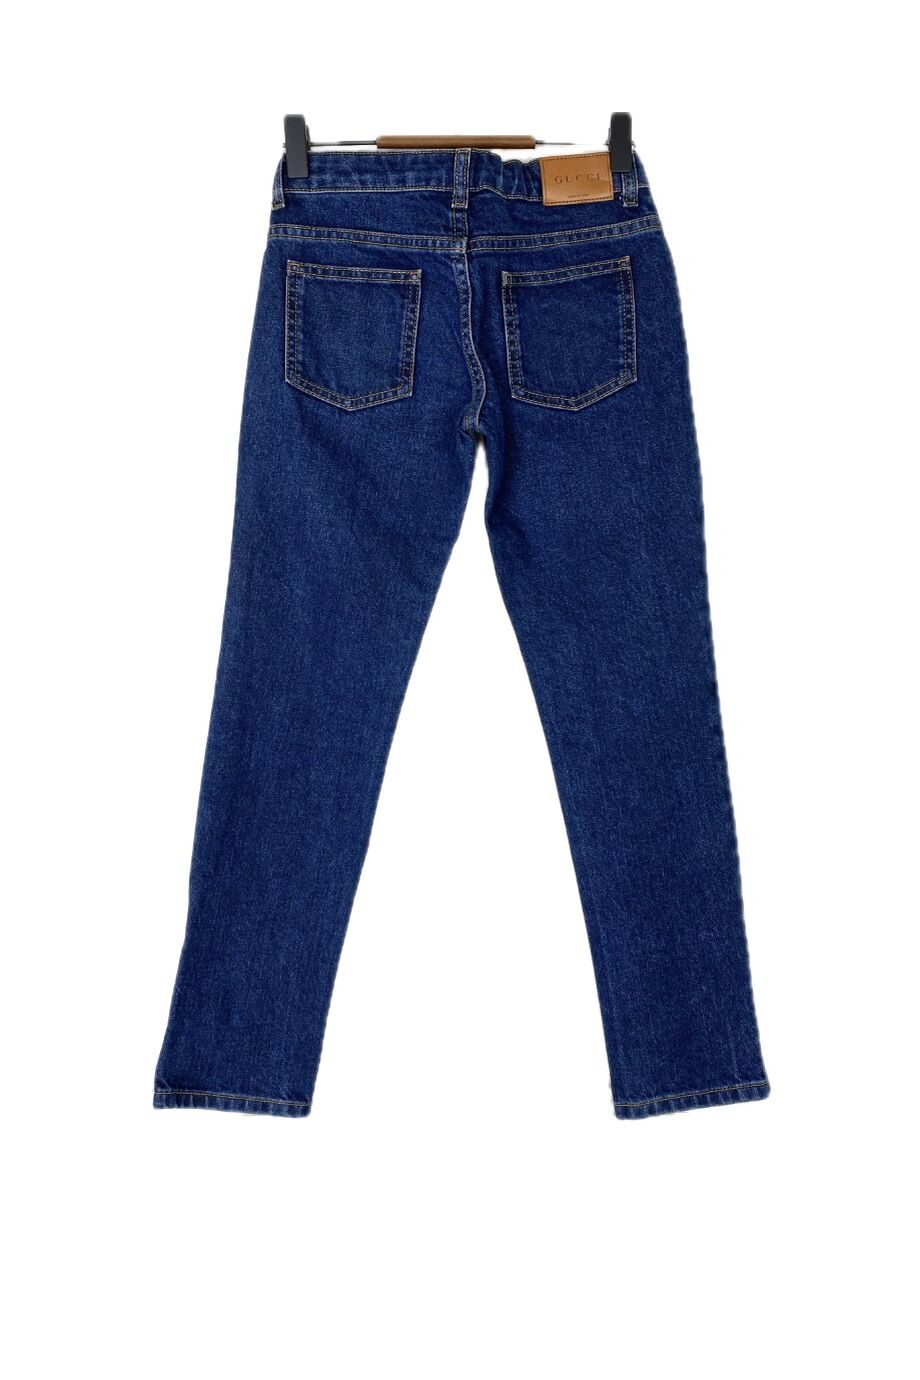 image 2 Детские джинсы синего цвета с сердечком на кармане